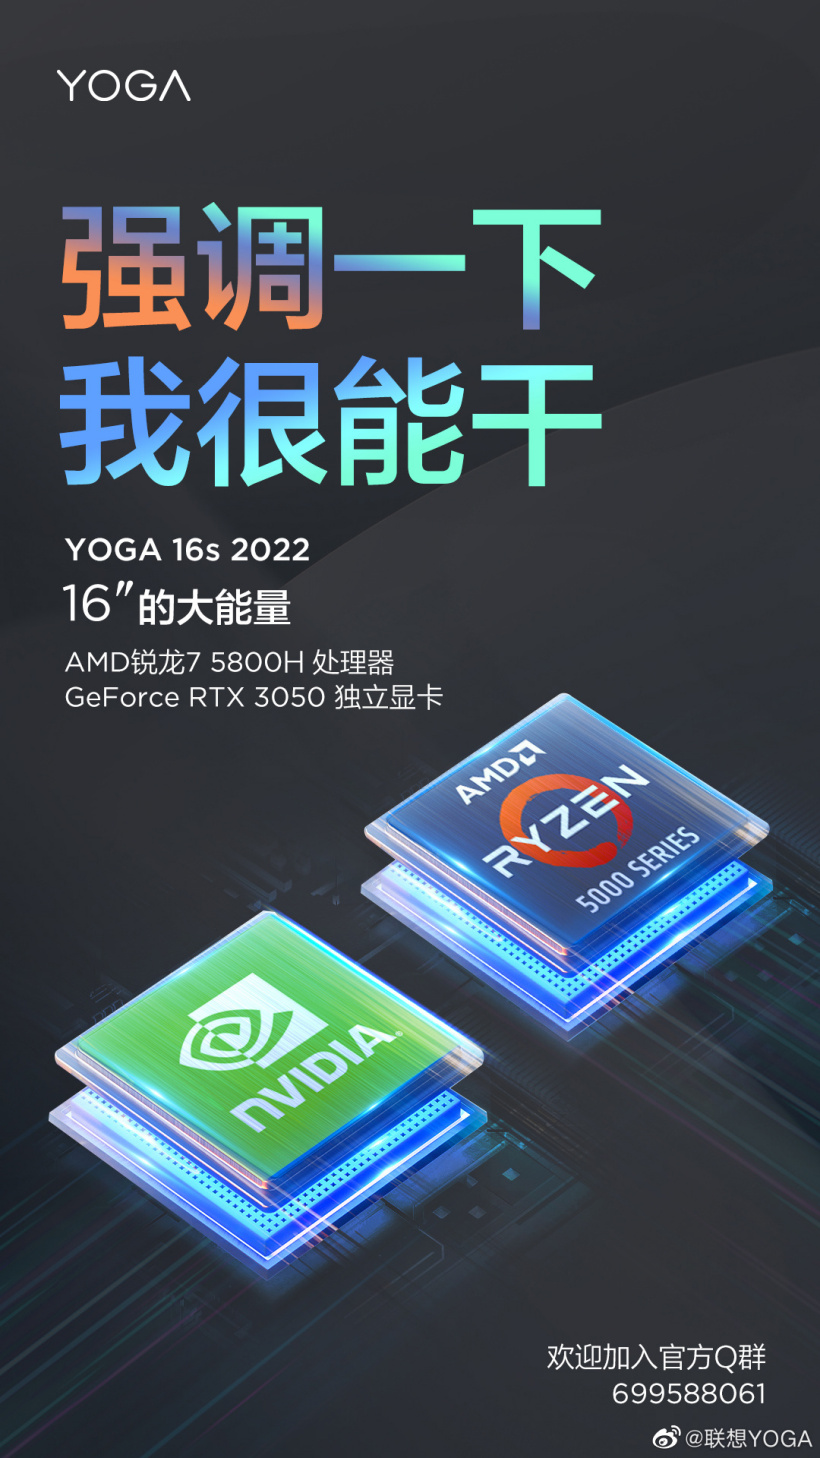 Lenovo Yoga 16s 2022 Processor and GPU